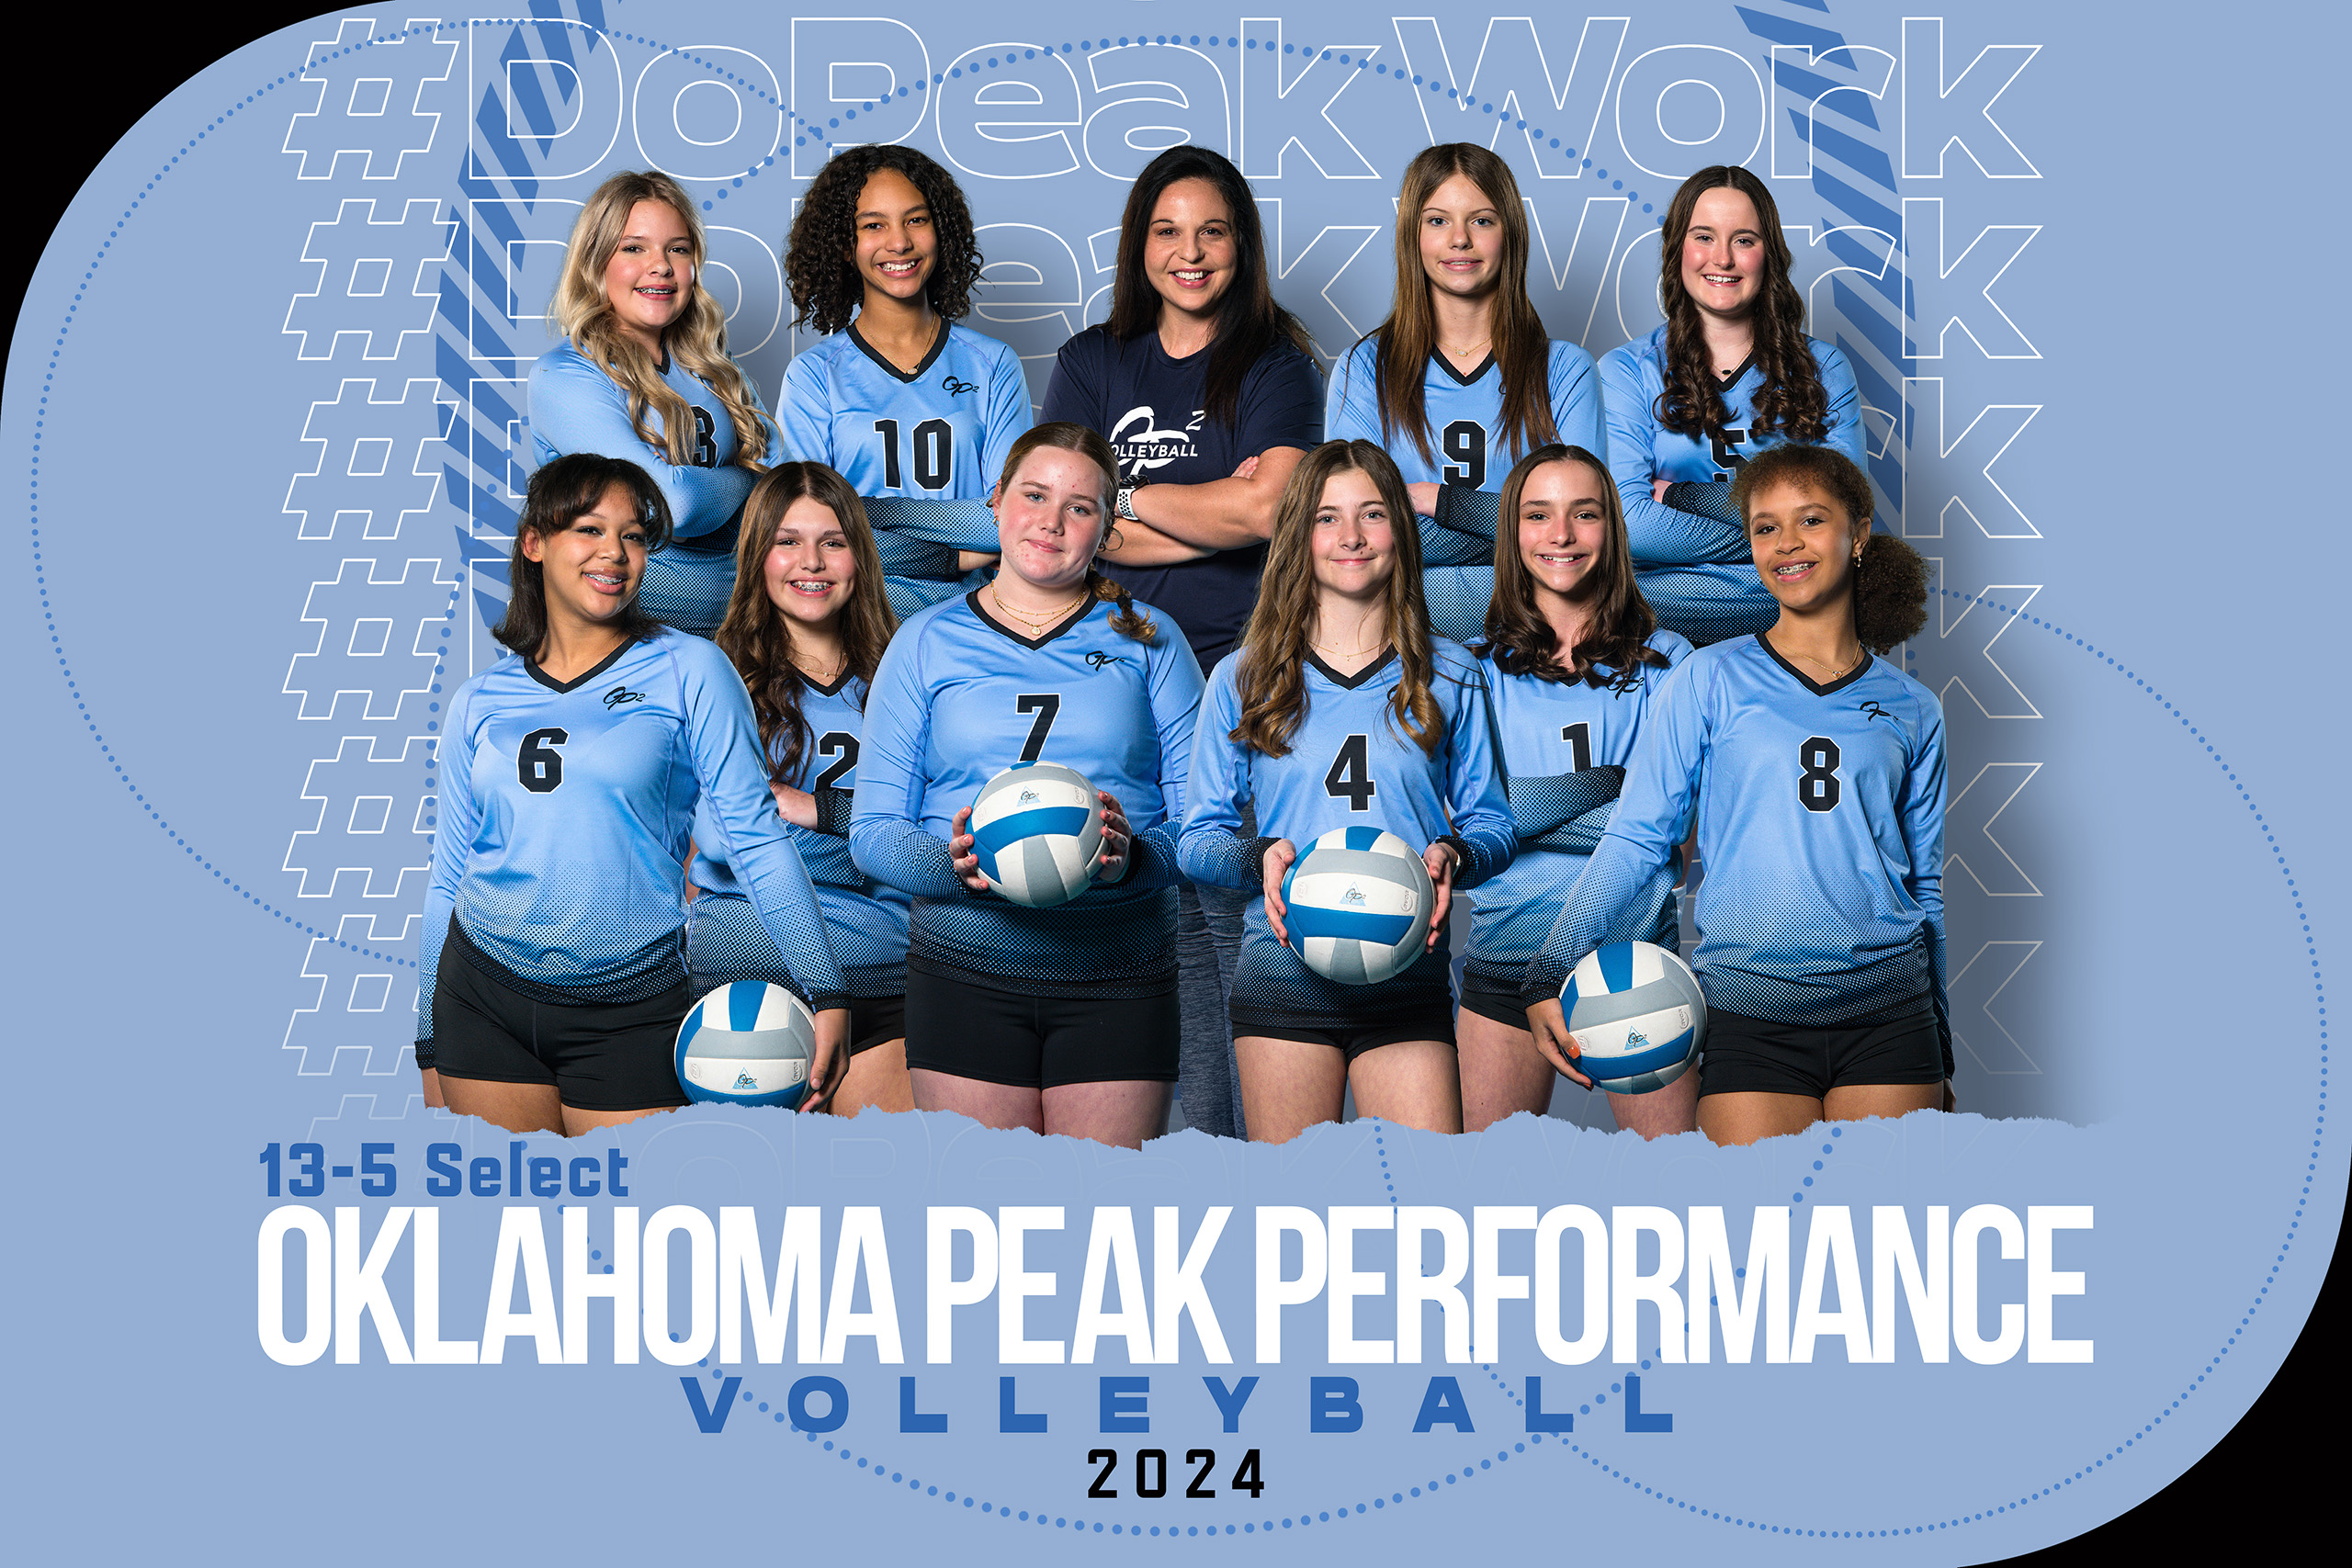 2024 Oklahoma Peak Performance 13-5